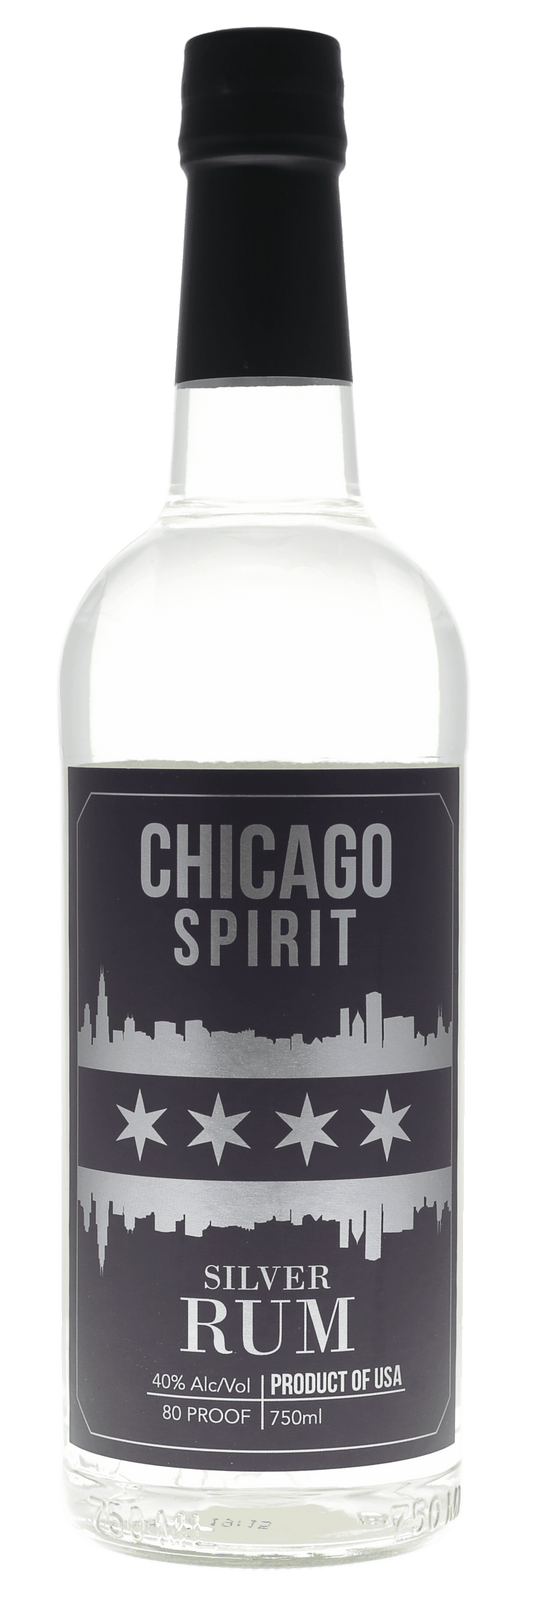 Chicago Spirit Silver Rum